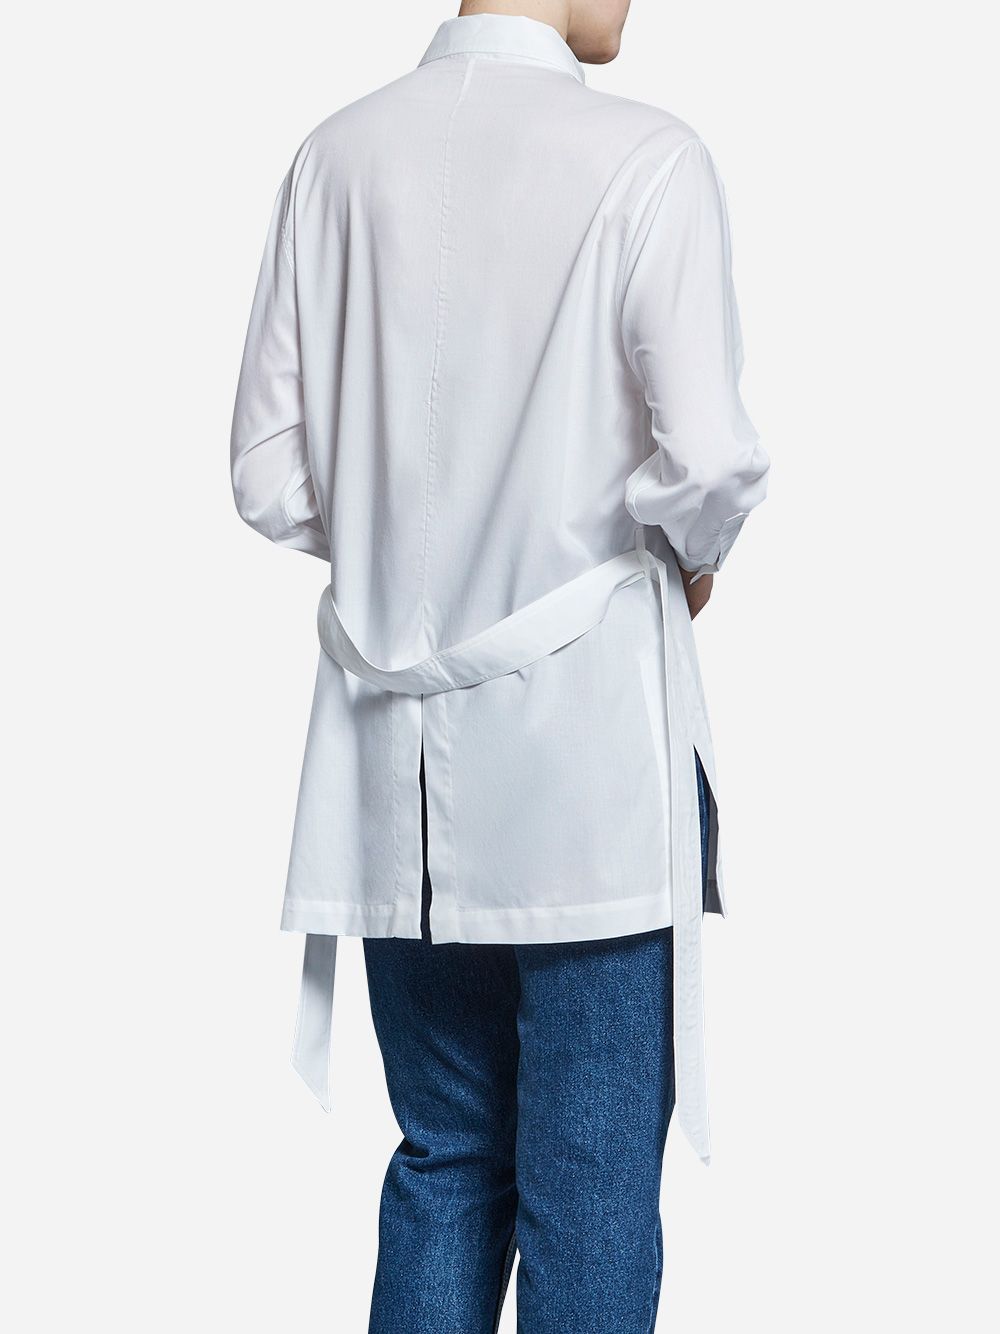 Camisa Branca Safari com Cinto | A-line Clothing